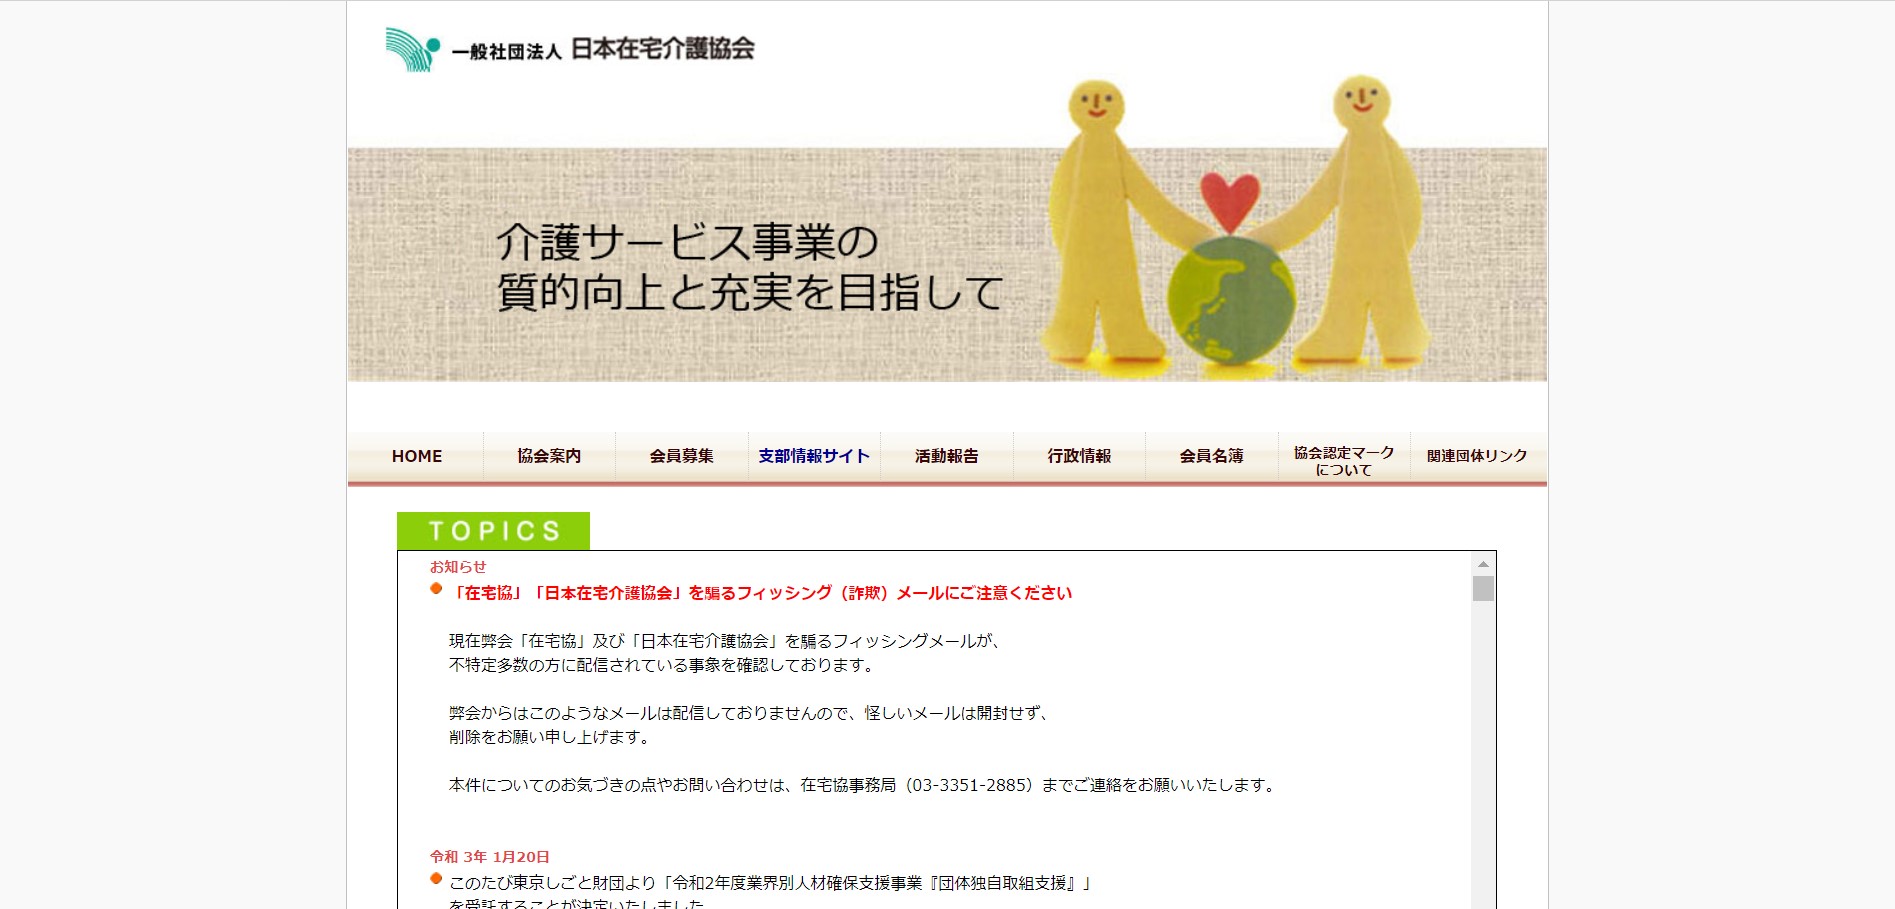 日本在宅介護協会